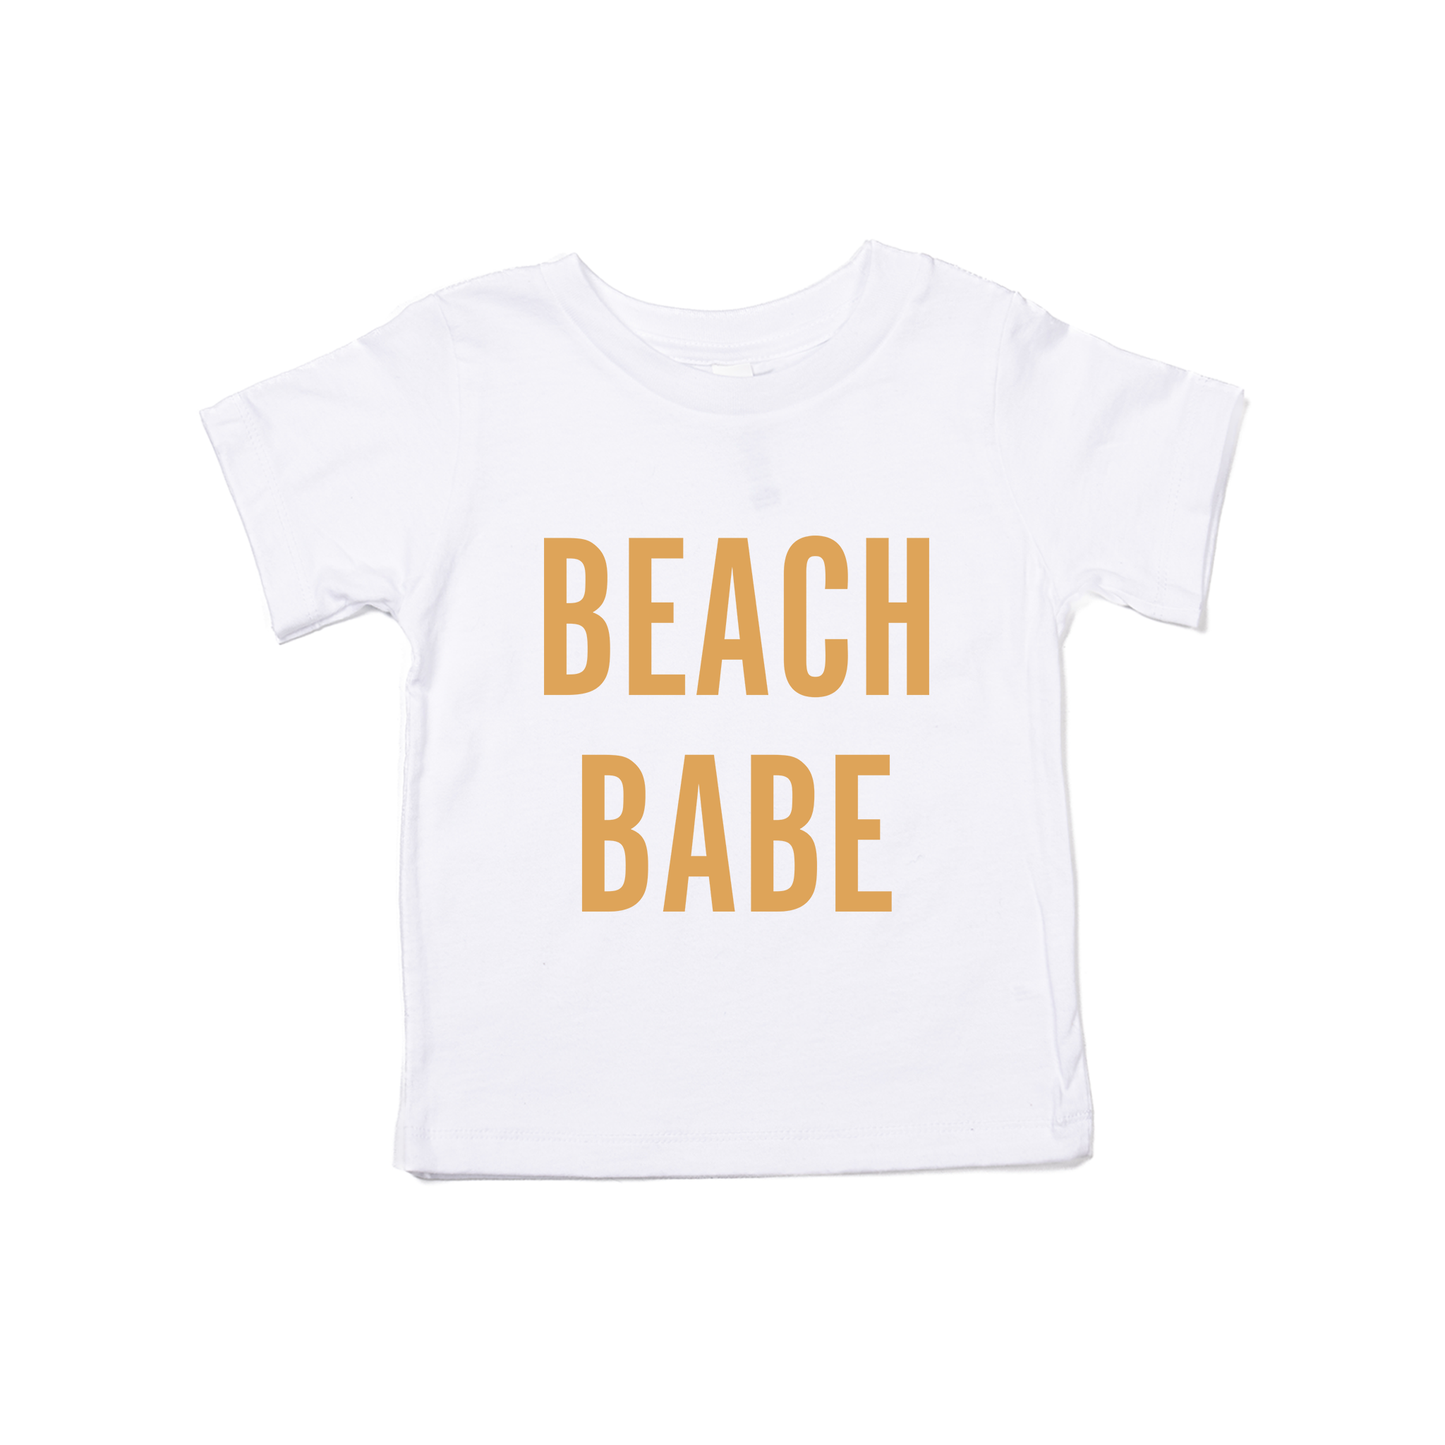 BEACH BABE (Mustard) - Kids Tee (White)